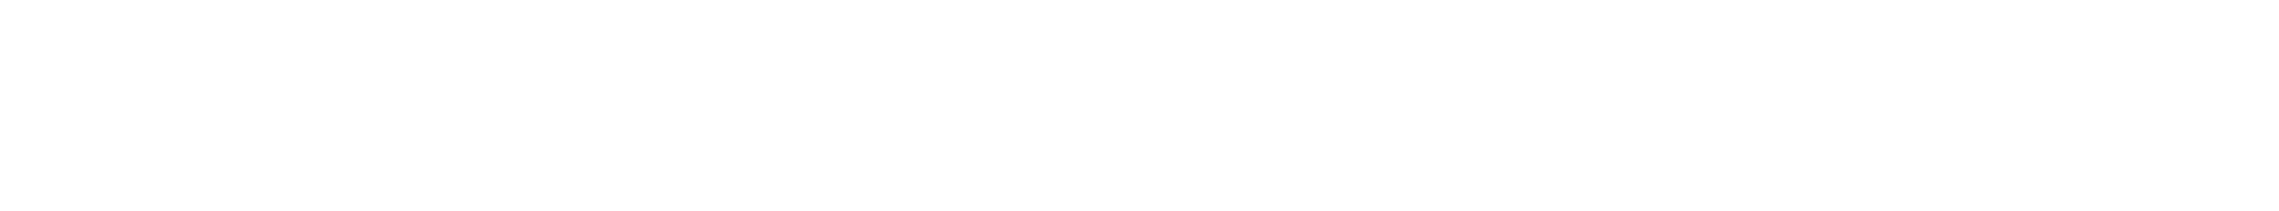 mc22-logos-weiss-banner-captamo (1)